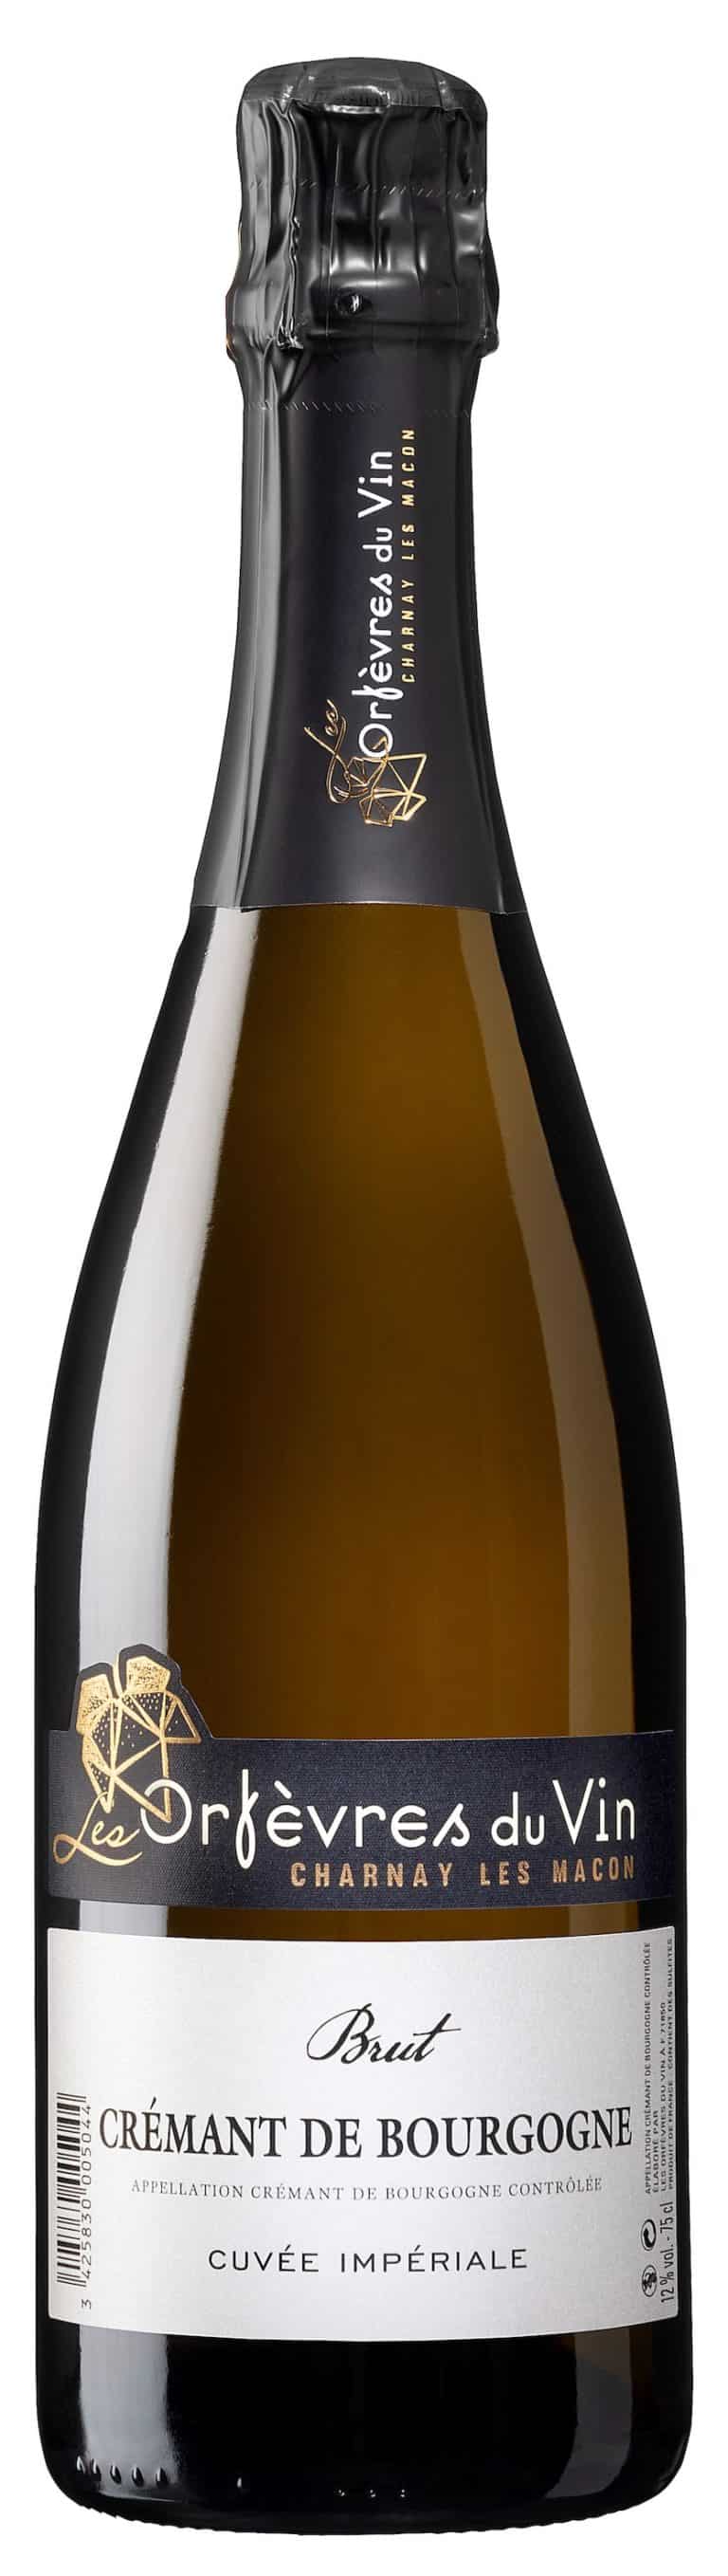 Les Orfèvres du vin proposent une cuvée impériale savoureuse de leur Crémant de Bourgogne